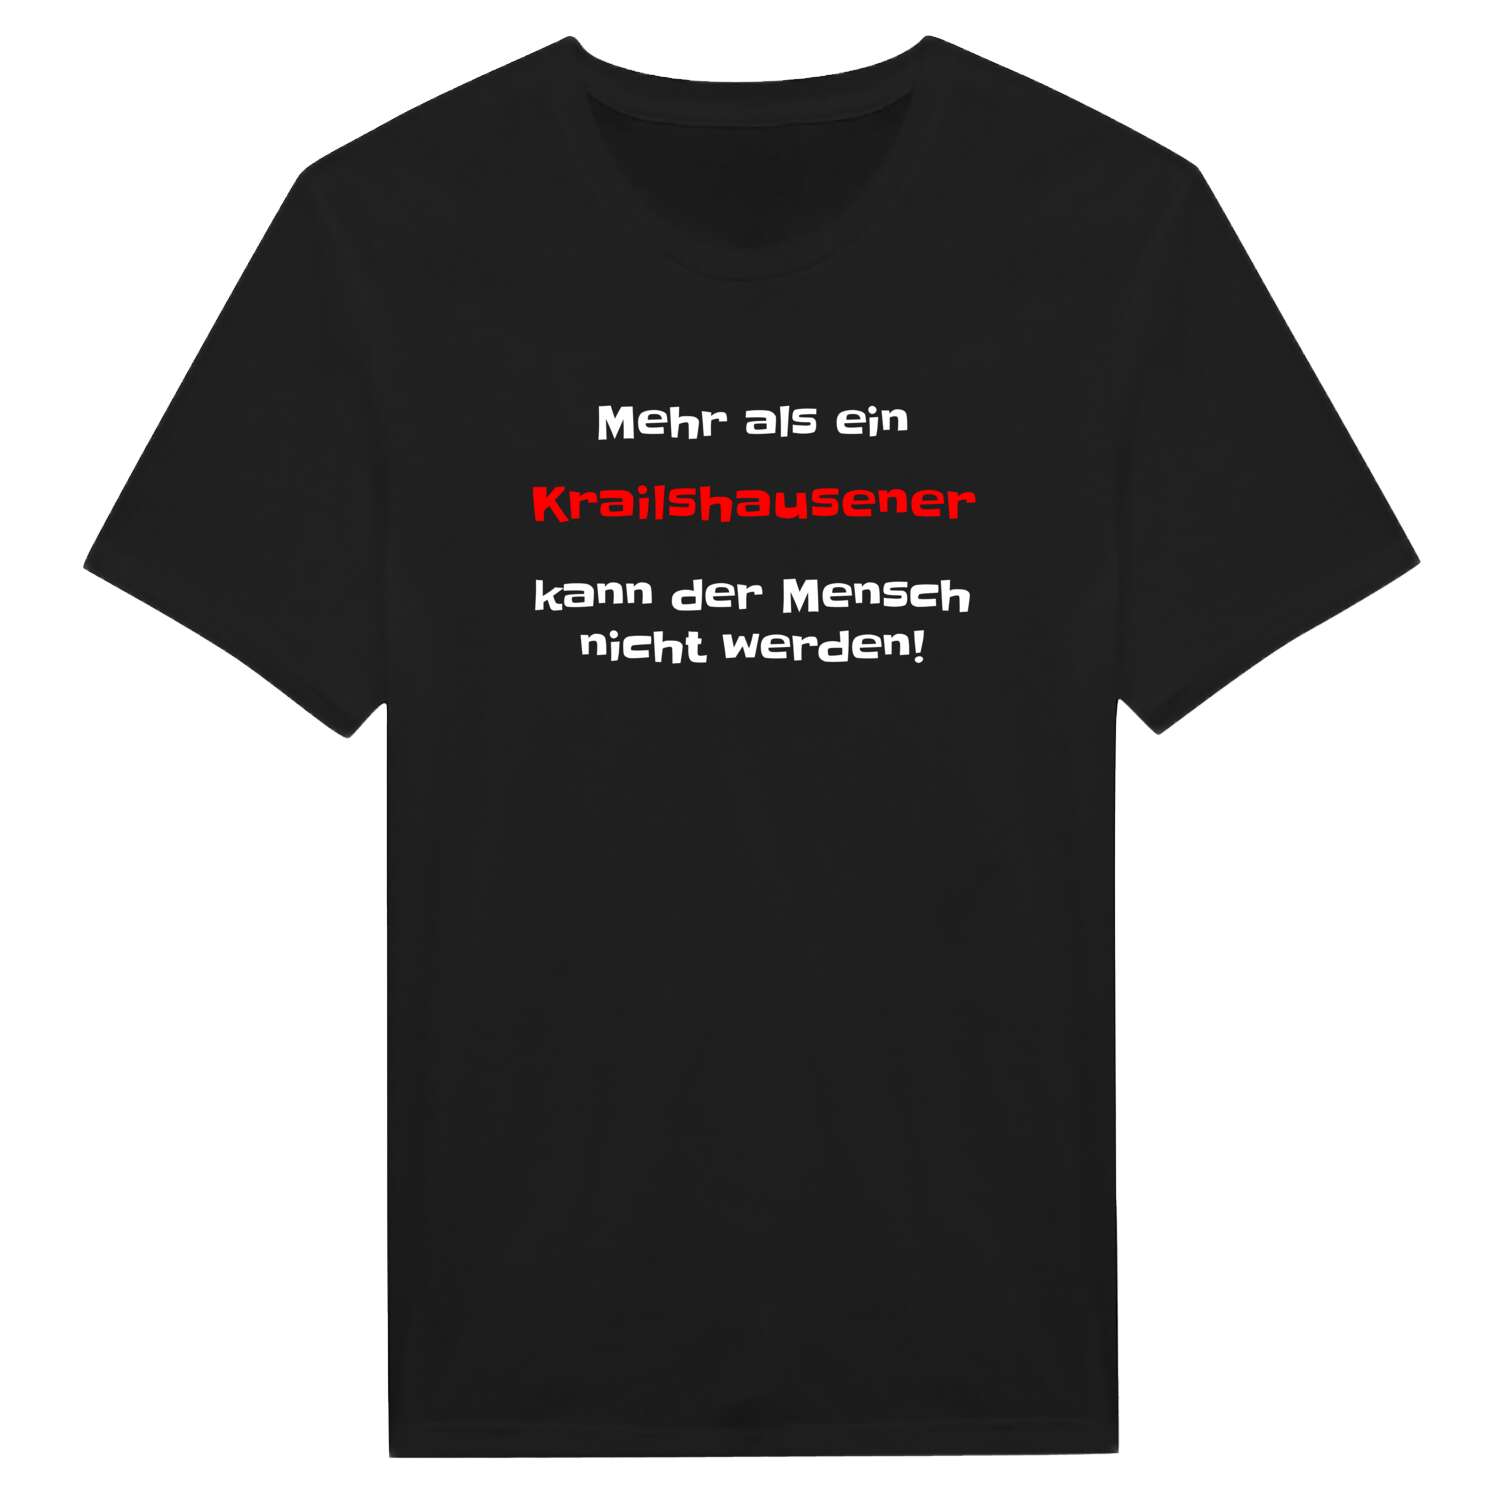 Krailshausen T-Shirt »Mehr als ein«